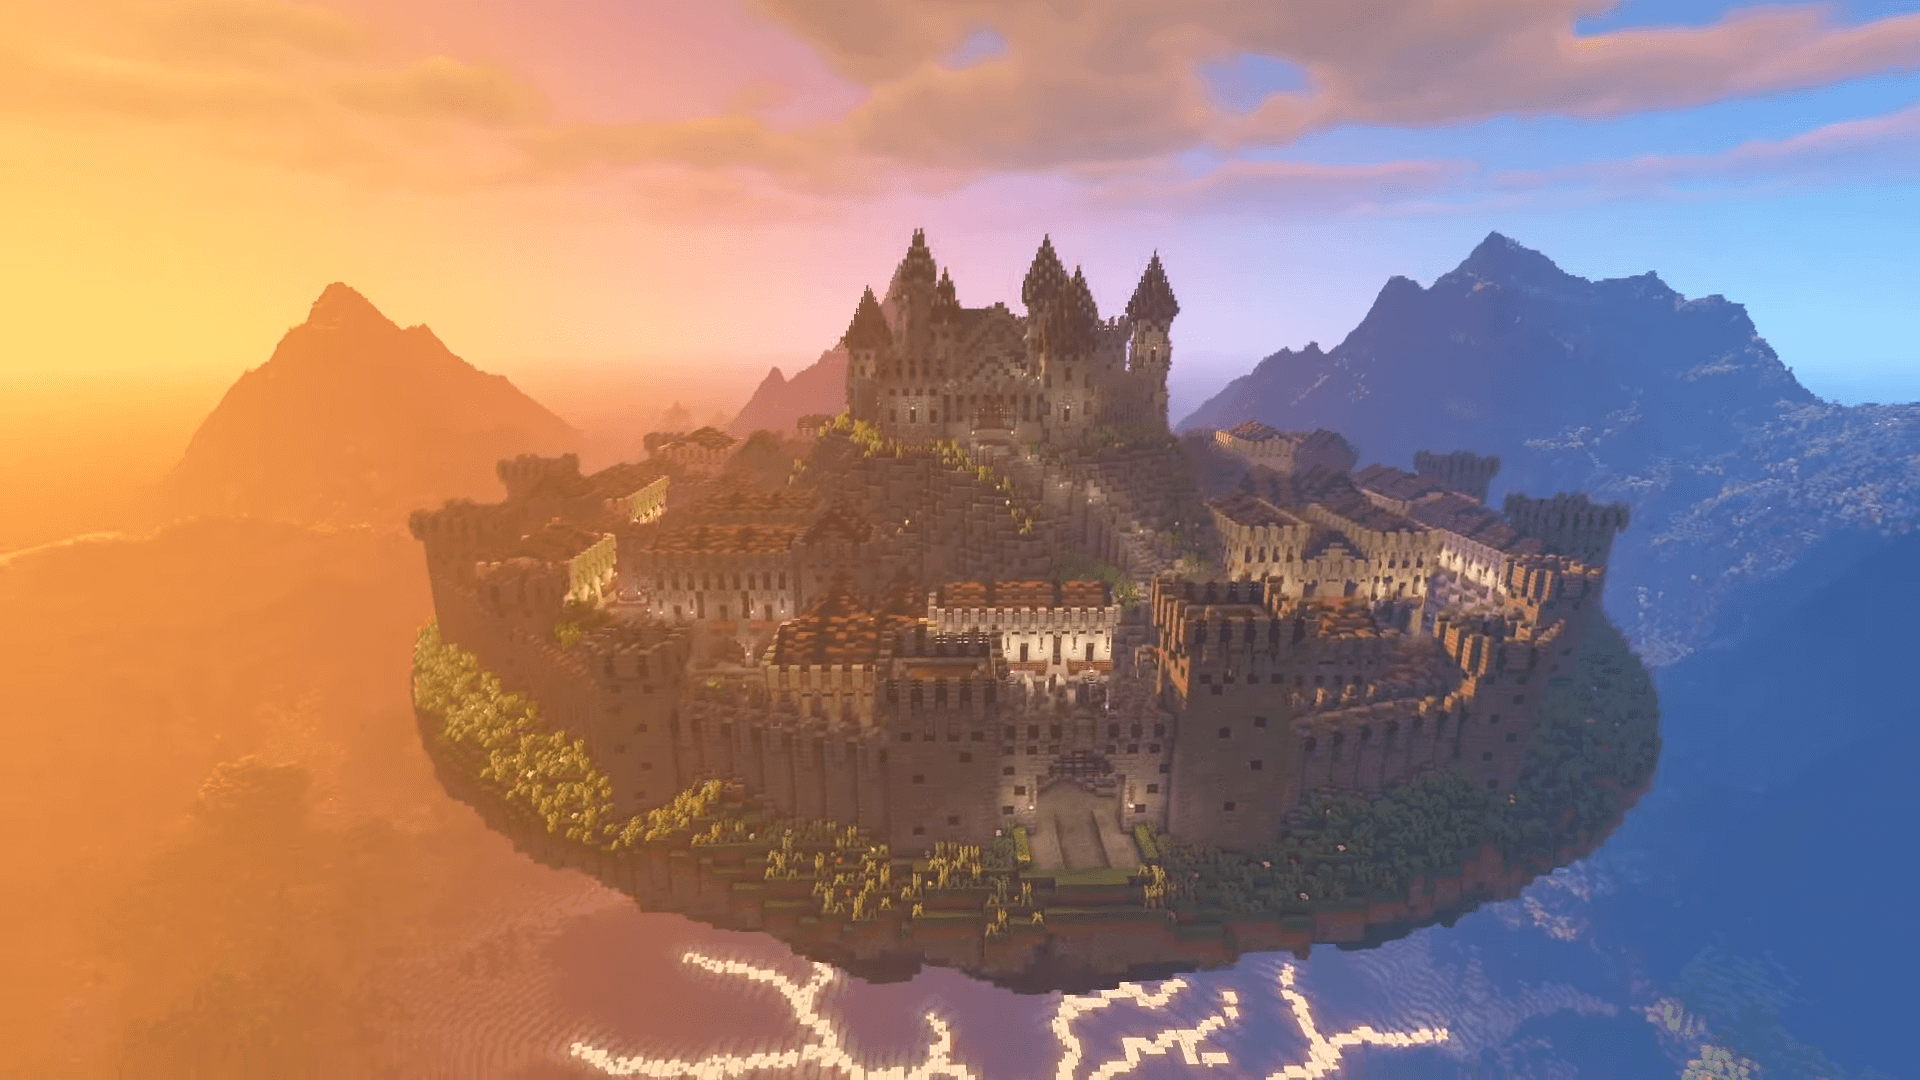 Minecraft Castle Ideas